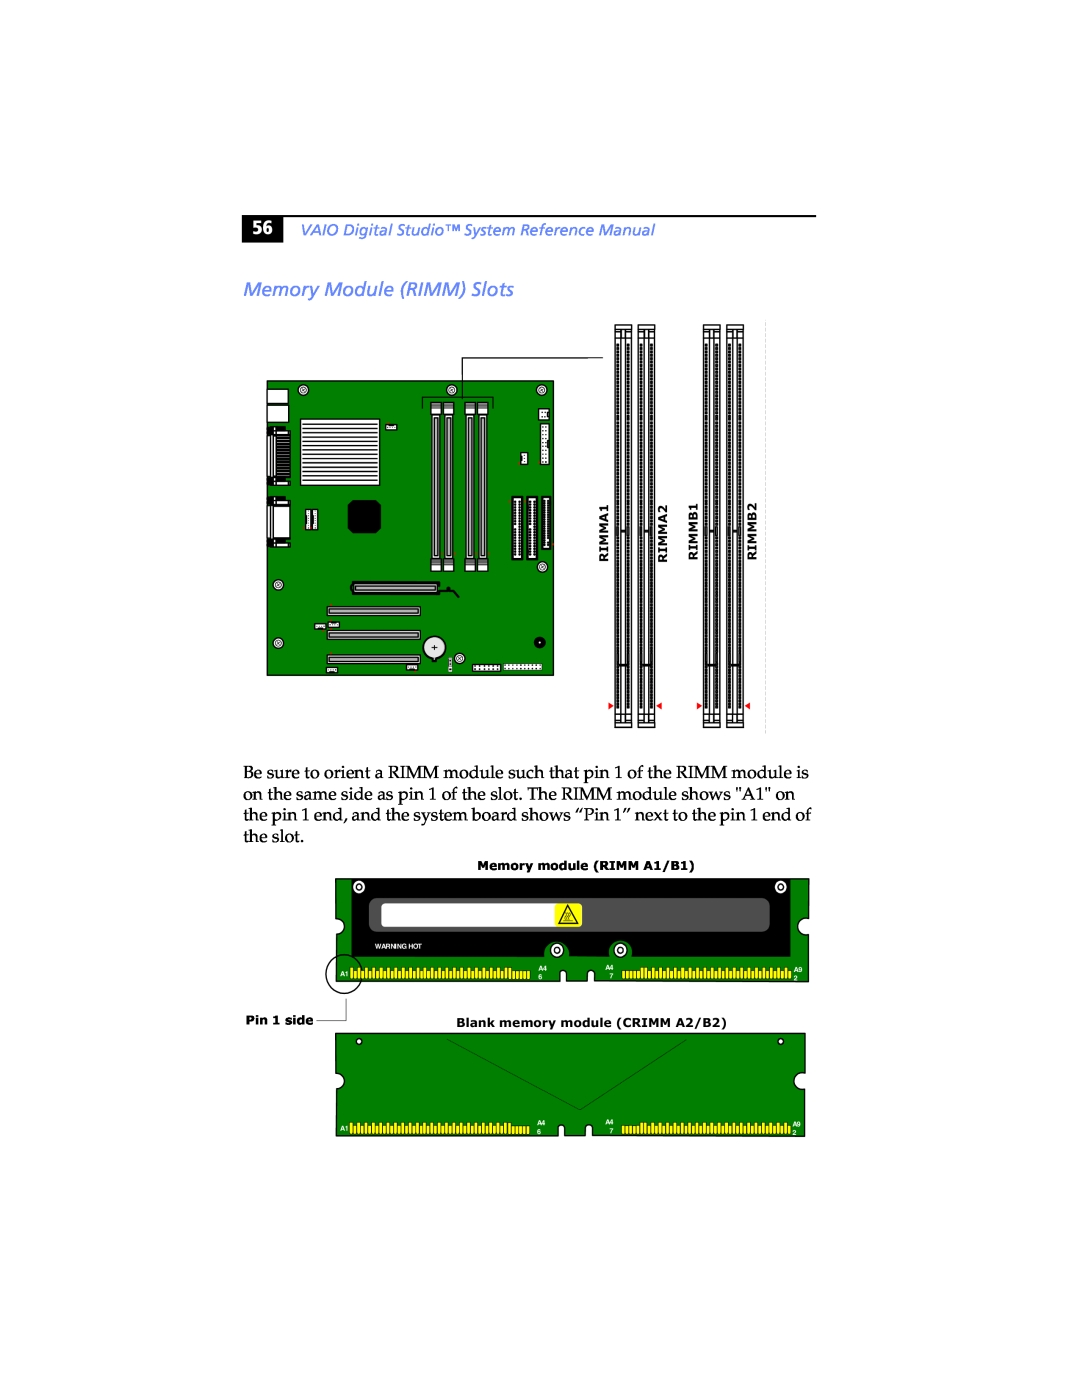 Sony PCV-RX463DS, PCV-RX462DS, PCV-RX490TV, PCV-RX470DS, PCV-RX480DS, PCV-RX465DS manual Memory Module RIMM Slots 